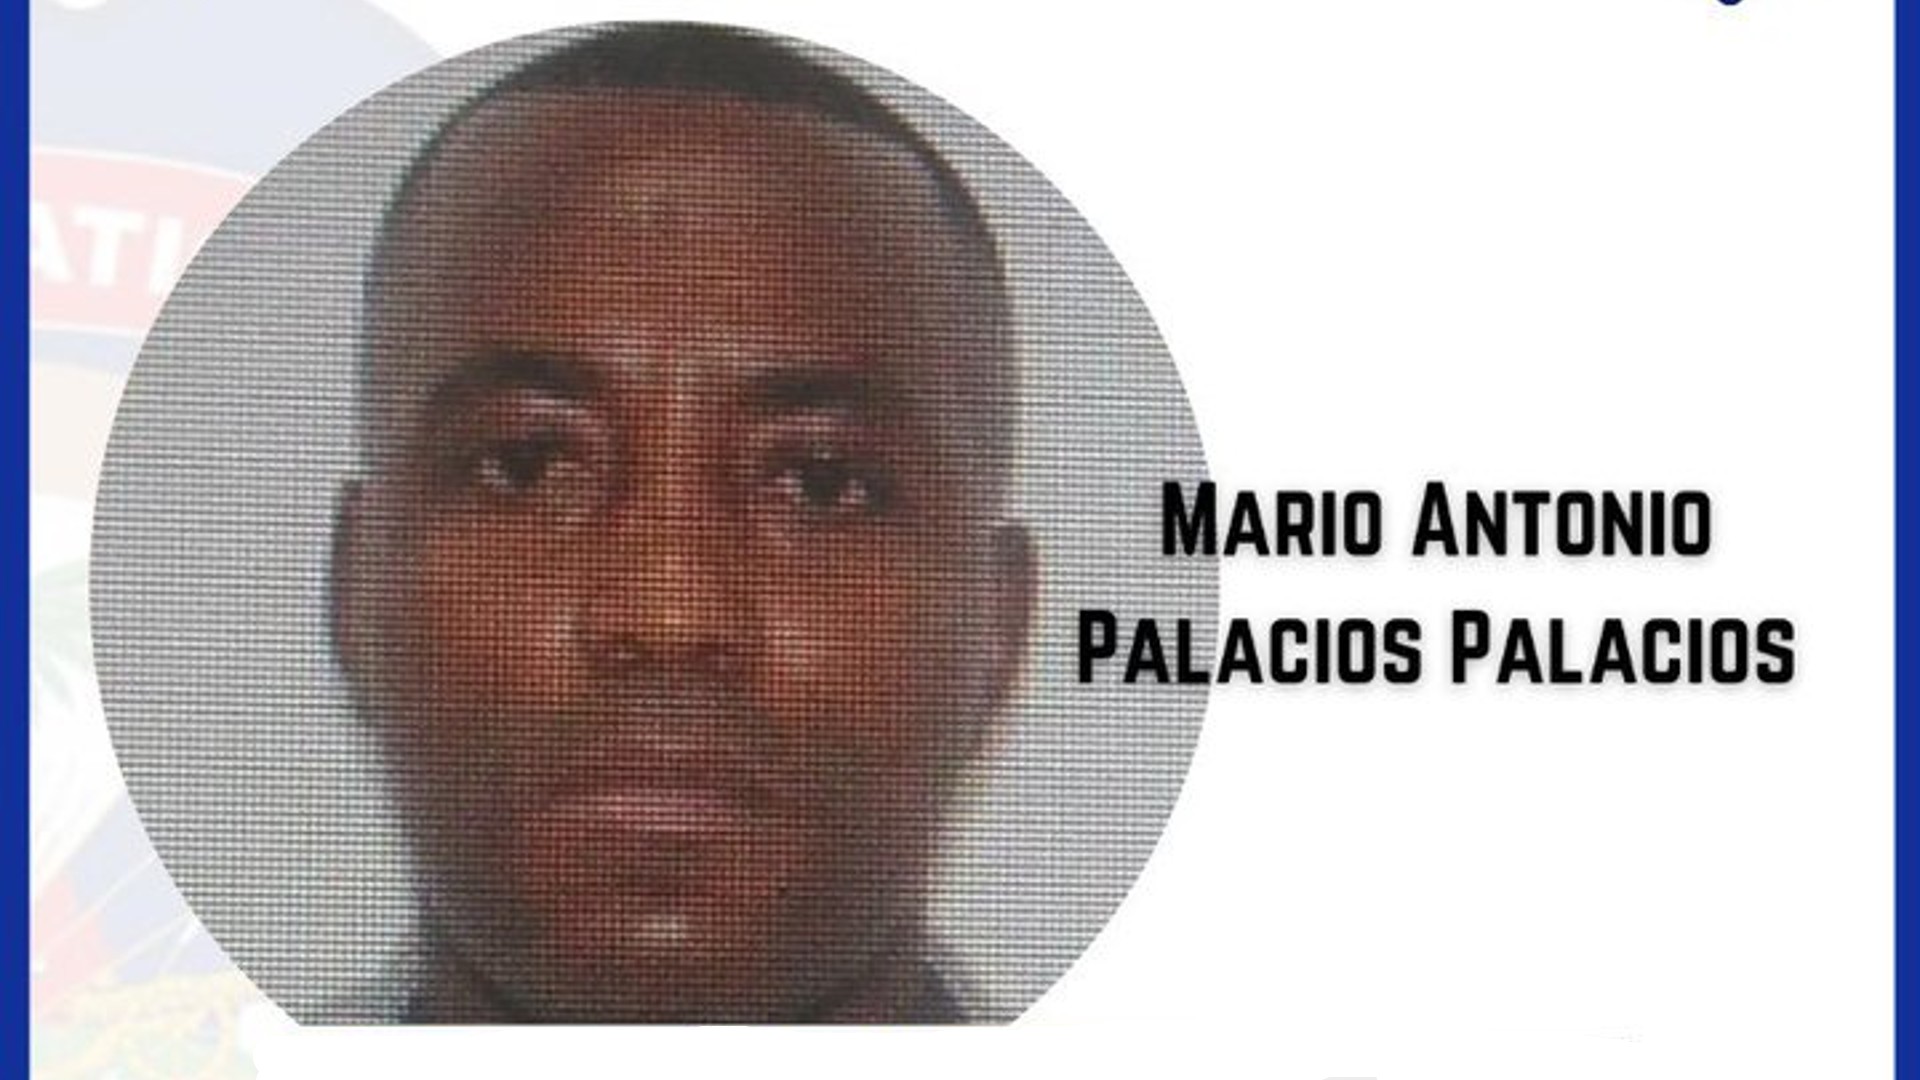 Mario Antonio Palacios Palacios, exmilitar colombiano buscado por el magnicidio del presidente de Haití, Jovenel Moïse.